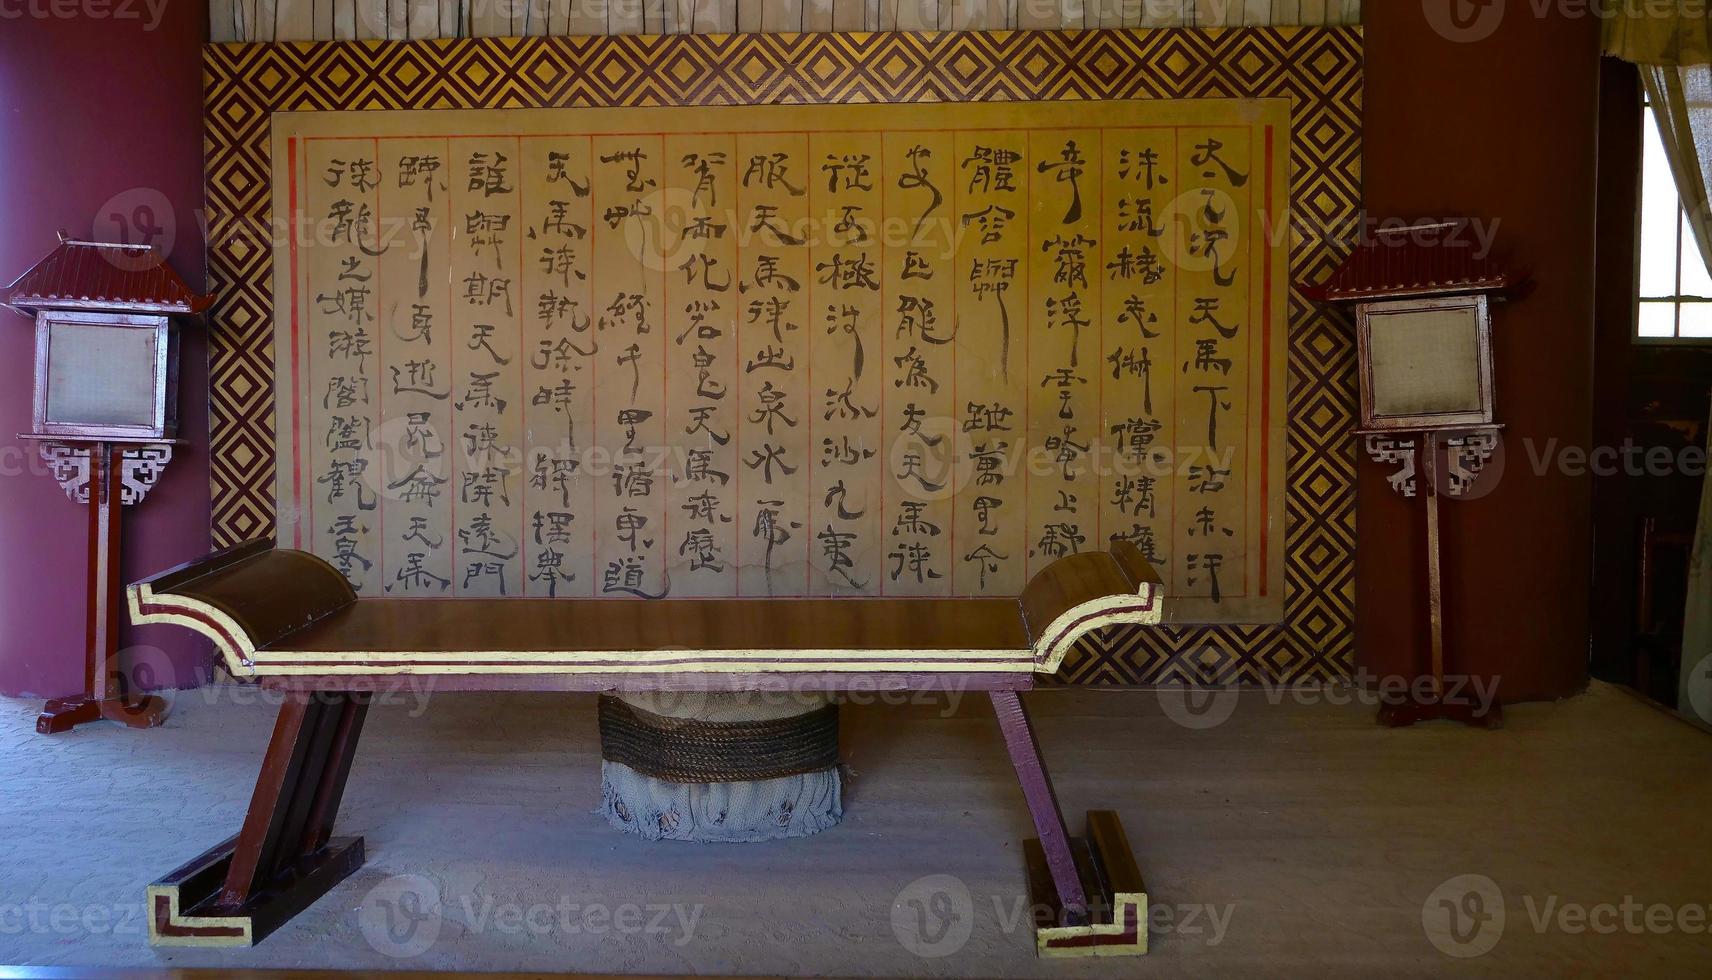 interni tradizionali nell'antico yangguan pass gansu china foto